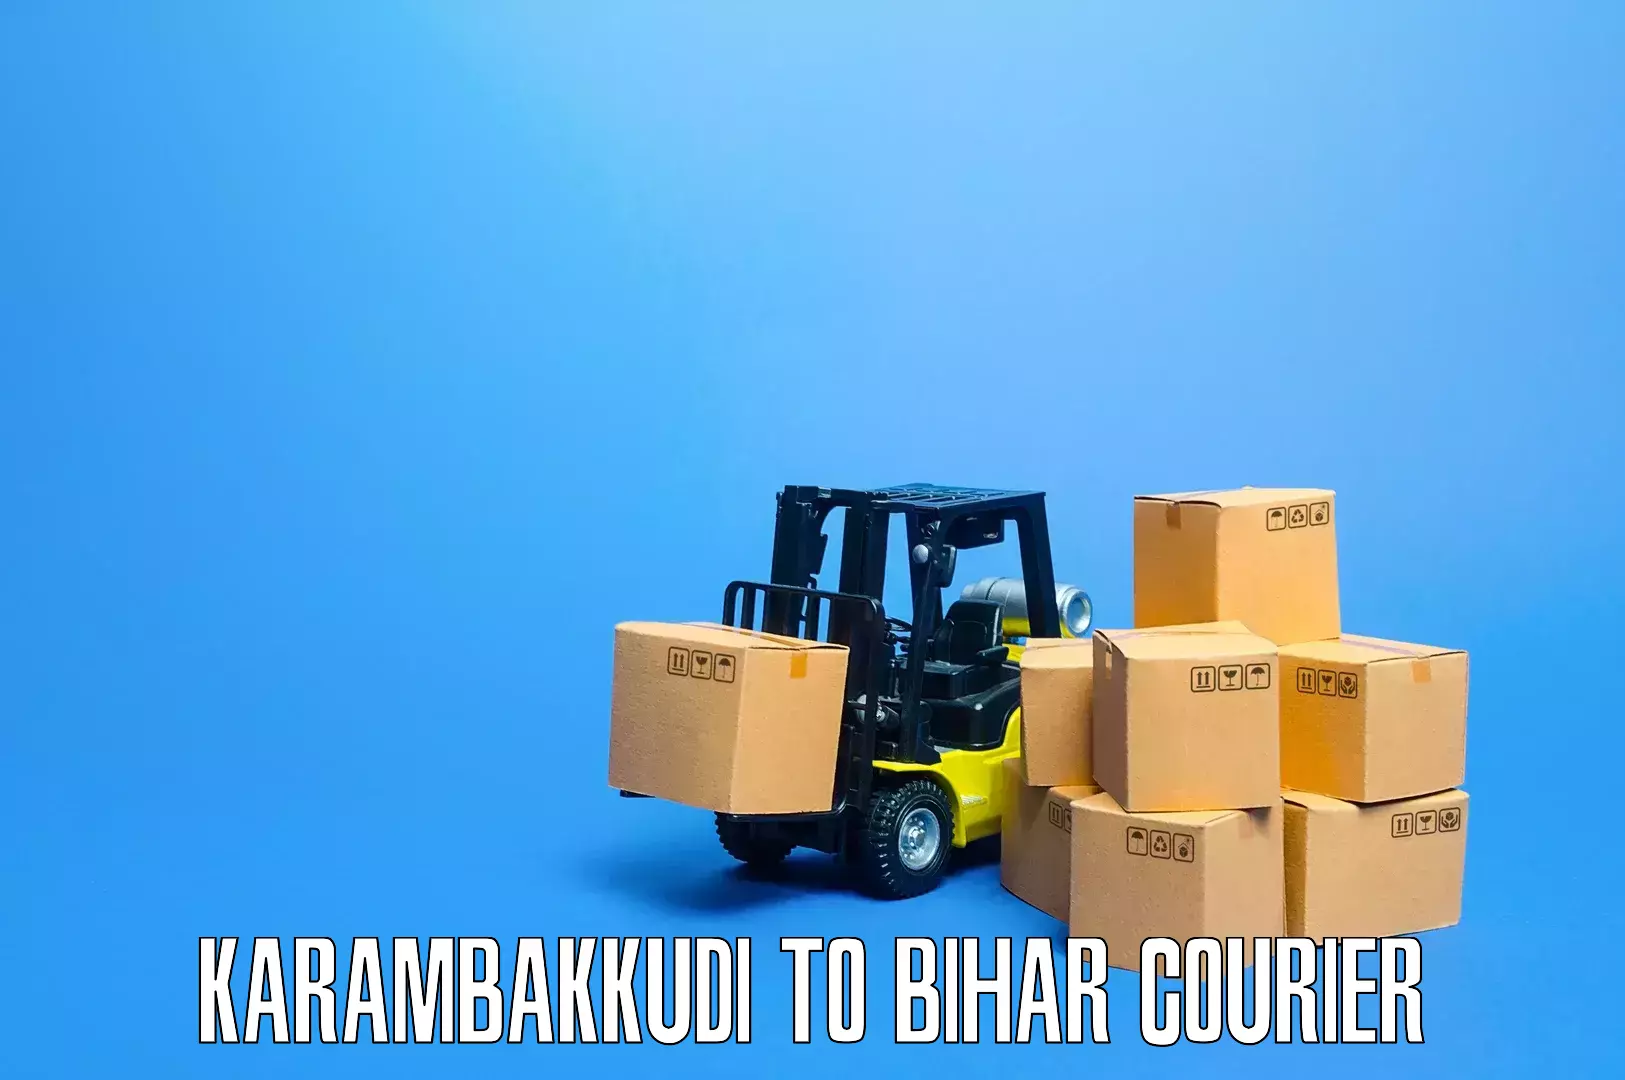 Professional furniture moving Karambakkudi to Mahaddipur